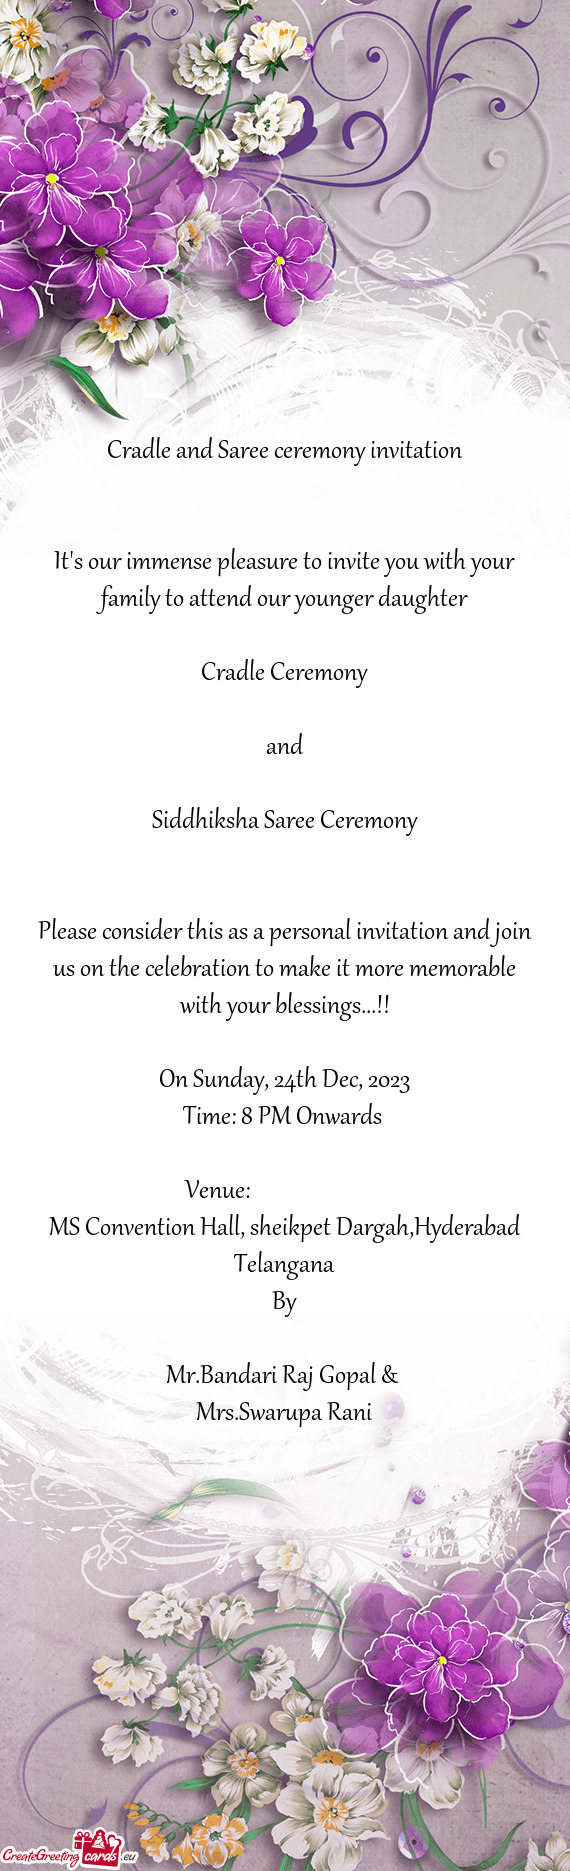 Siddhiksha Saree Ceremony